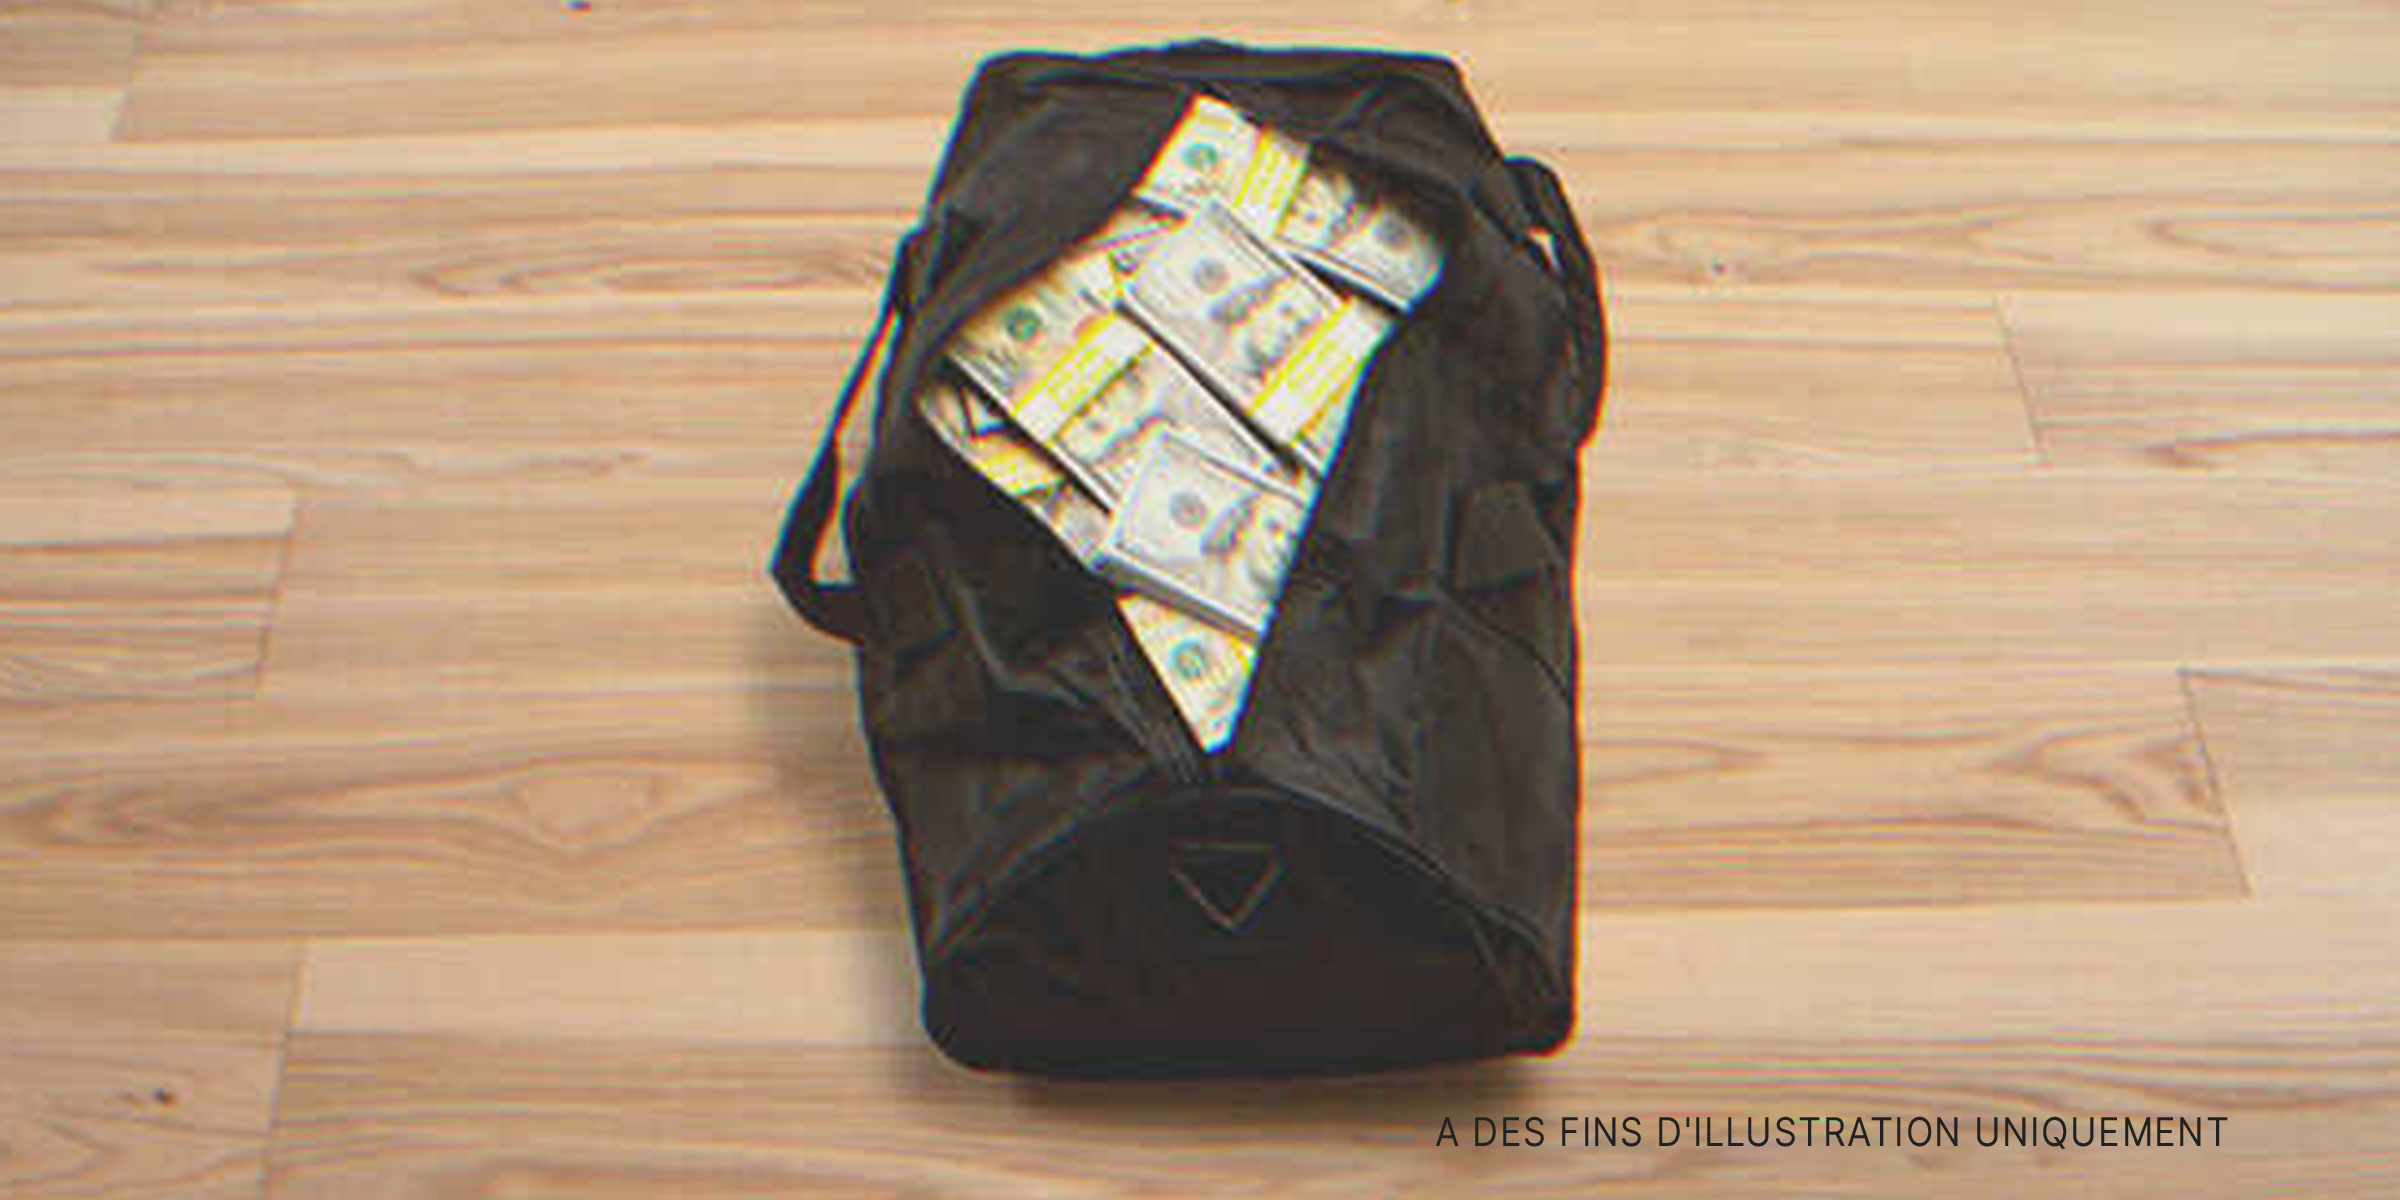 Un sac rempli d'argent | Source : Shutterstock